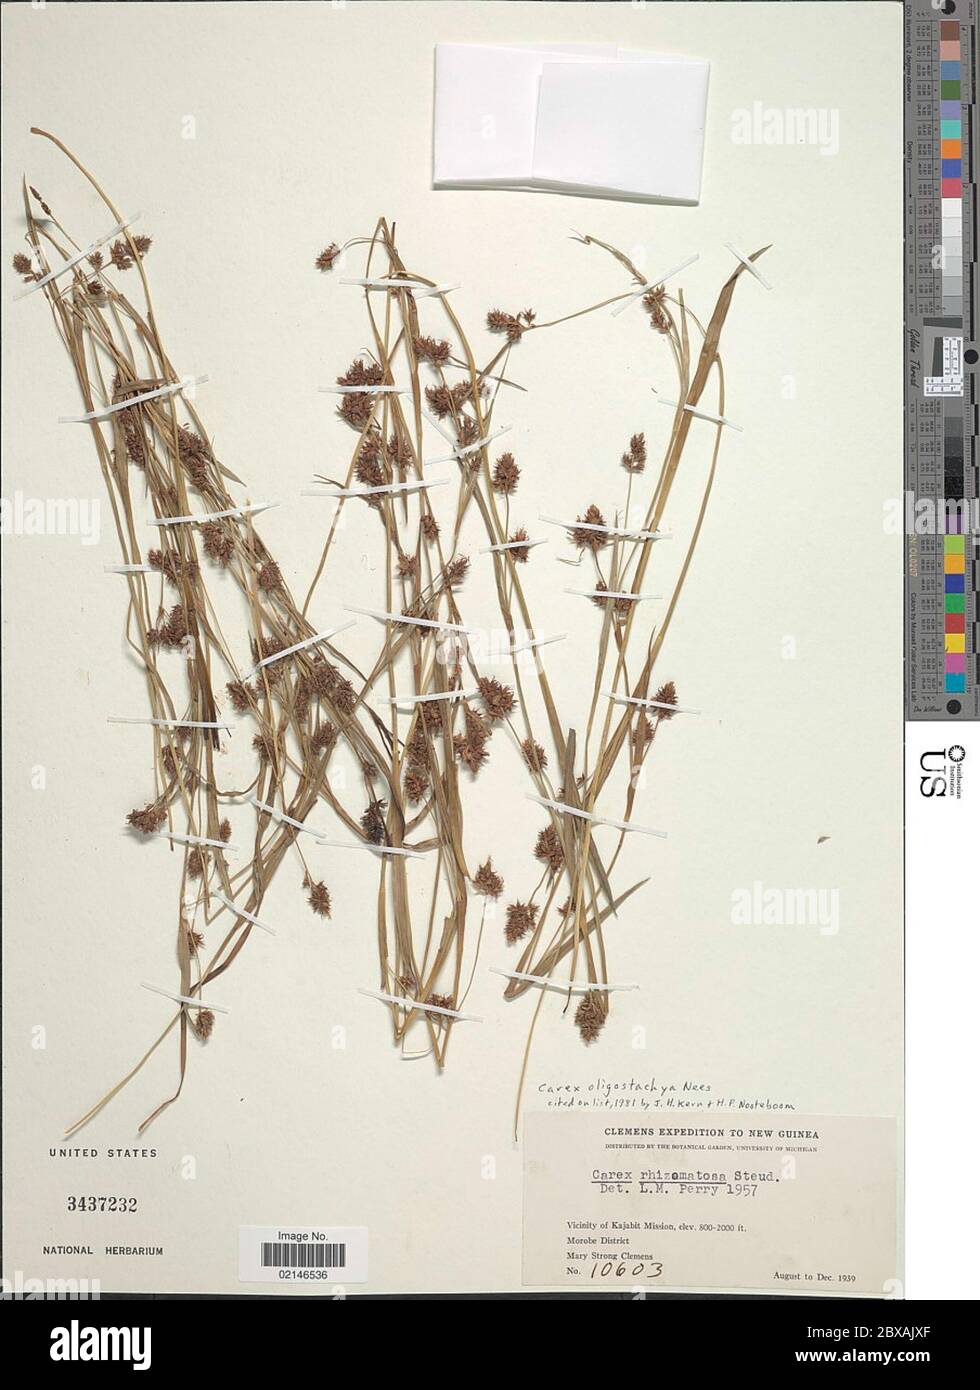 Carex oligostachya Nees Carex oligostachya Nees. Stock Photo